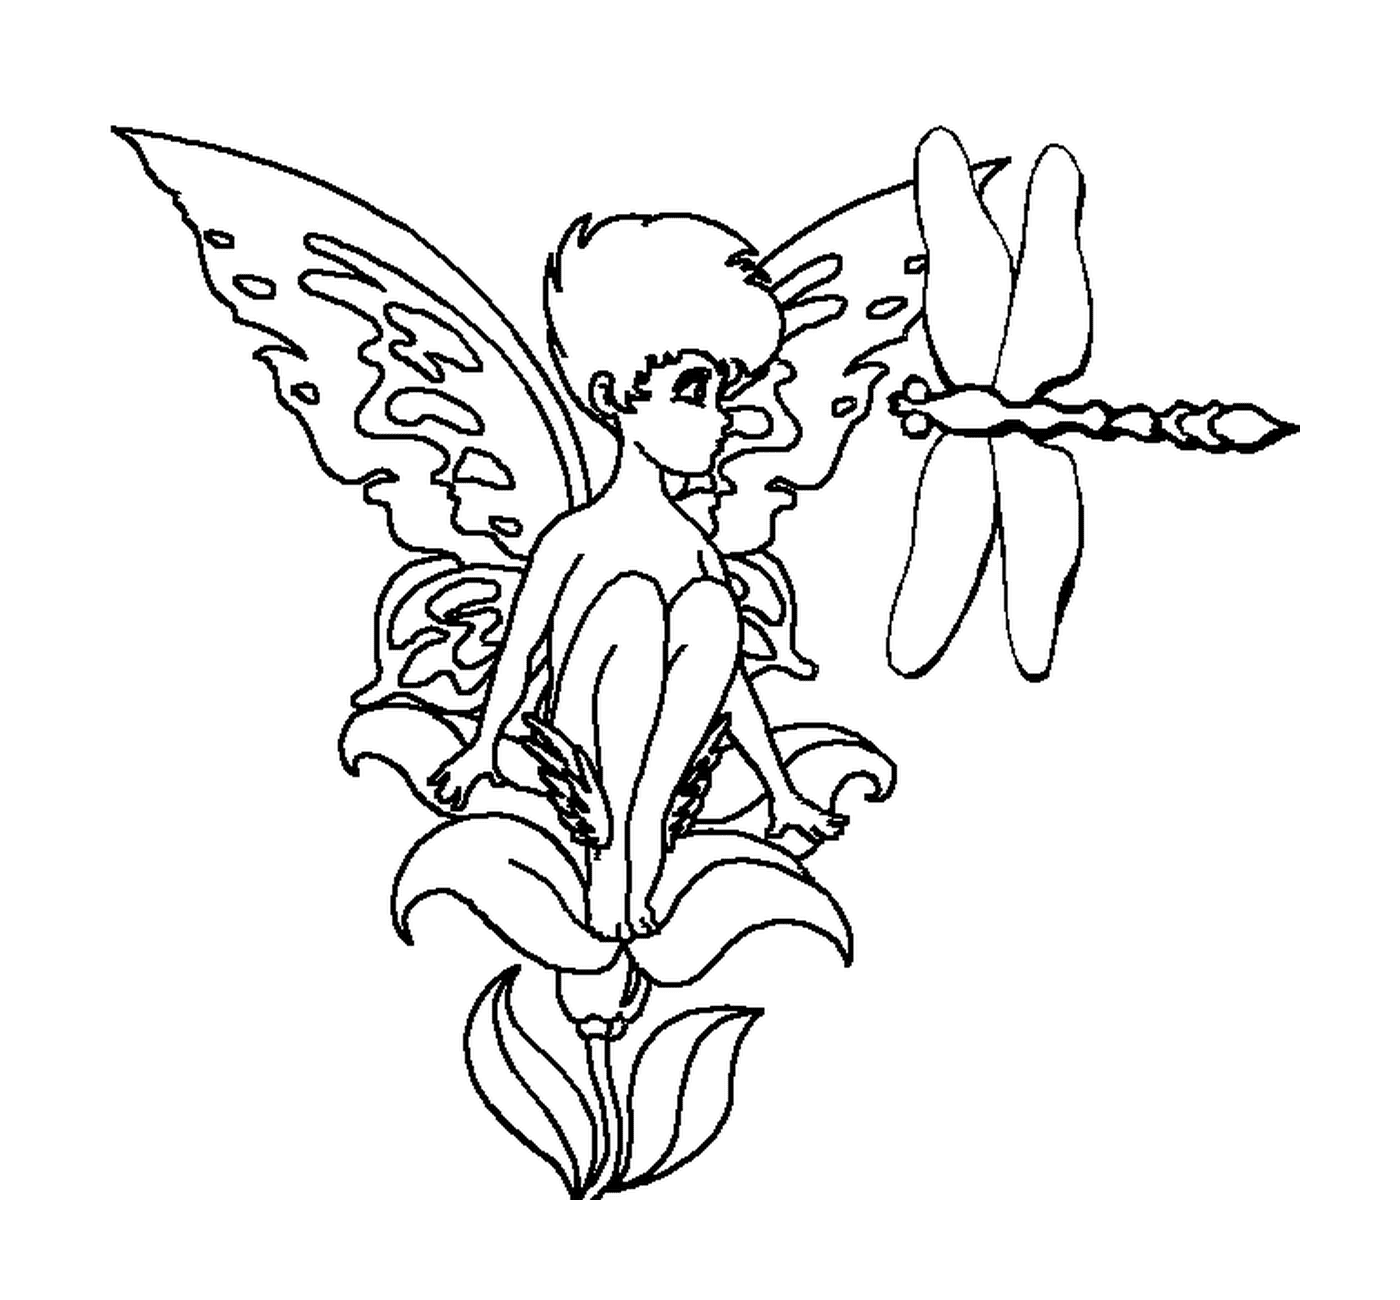  Una fata seduta su un fiore con una libellula 